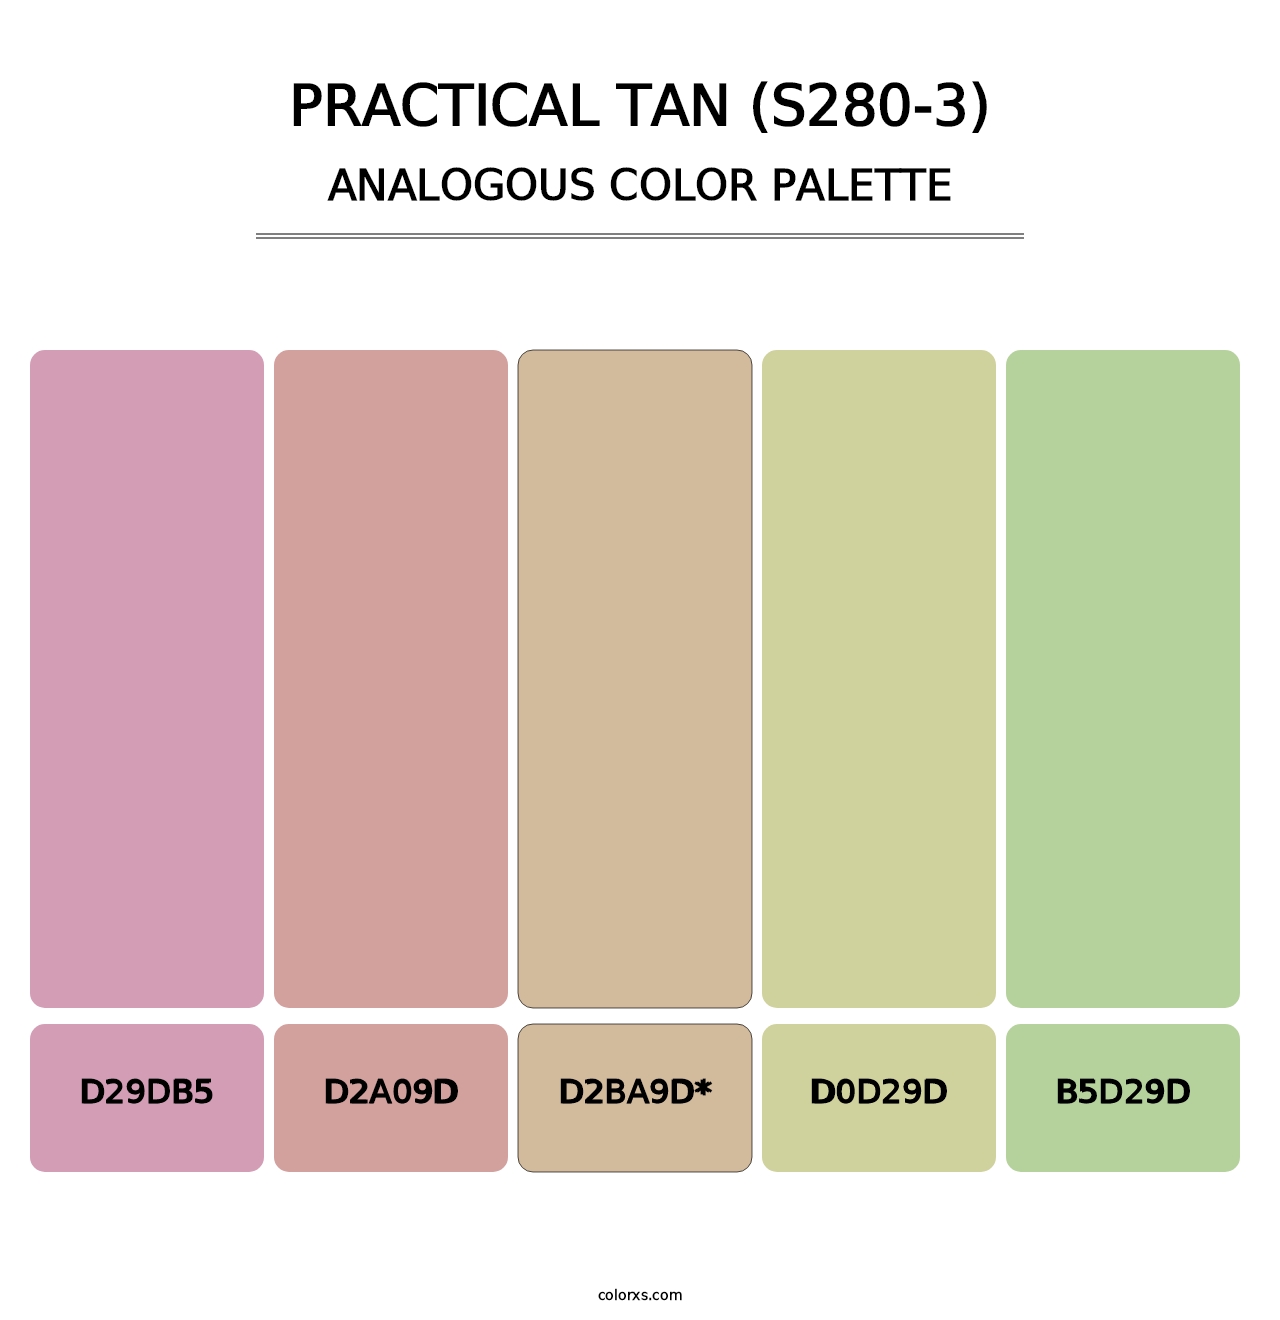 Practical Tan (S280-3) - Analogous Color Palette